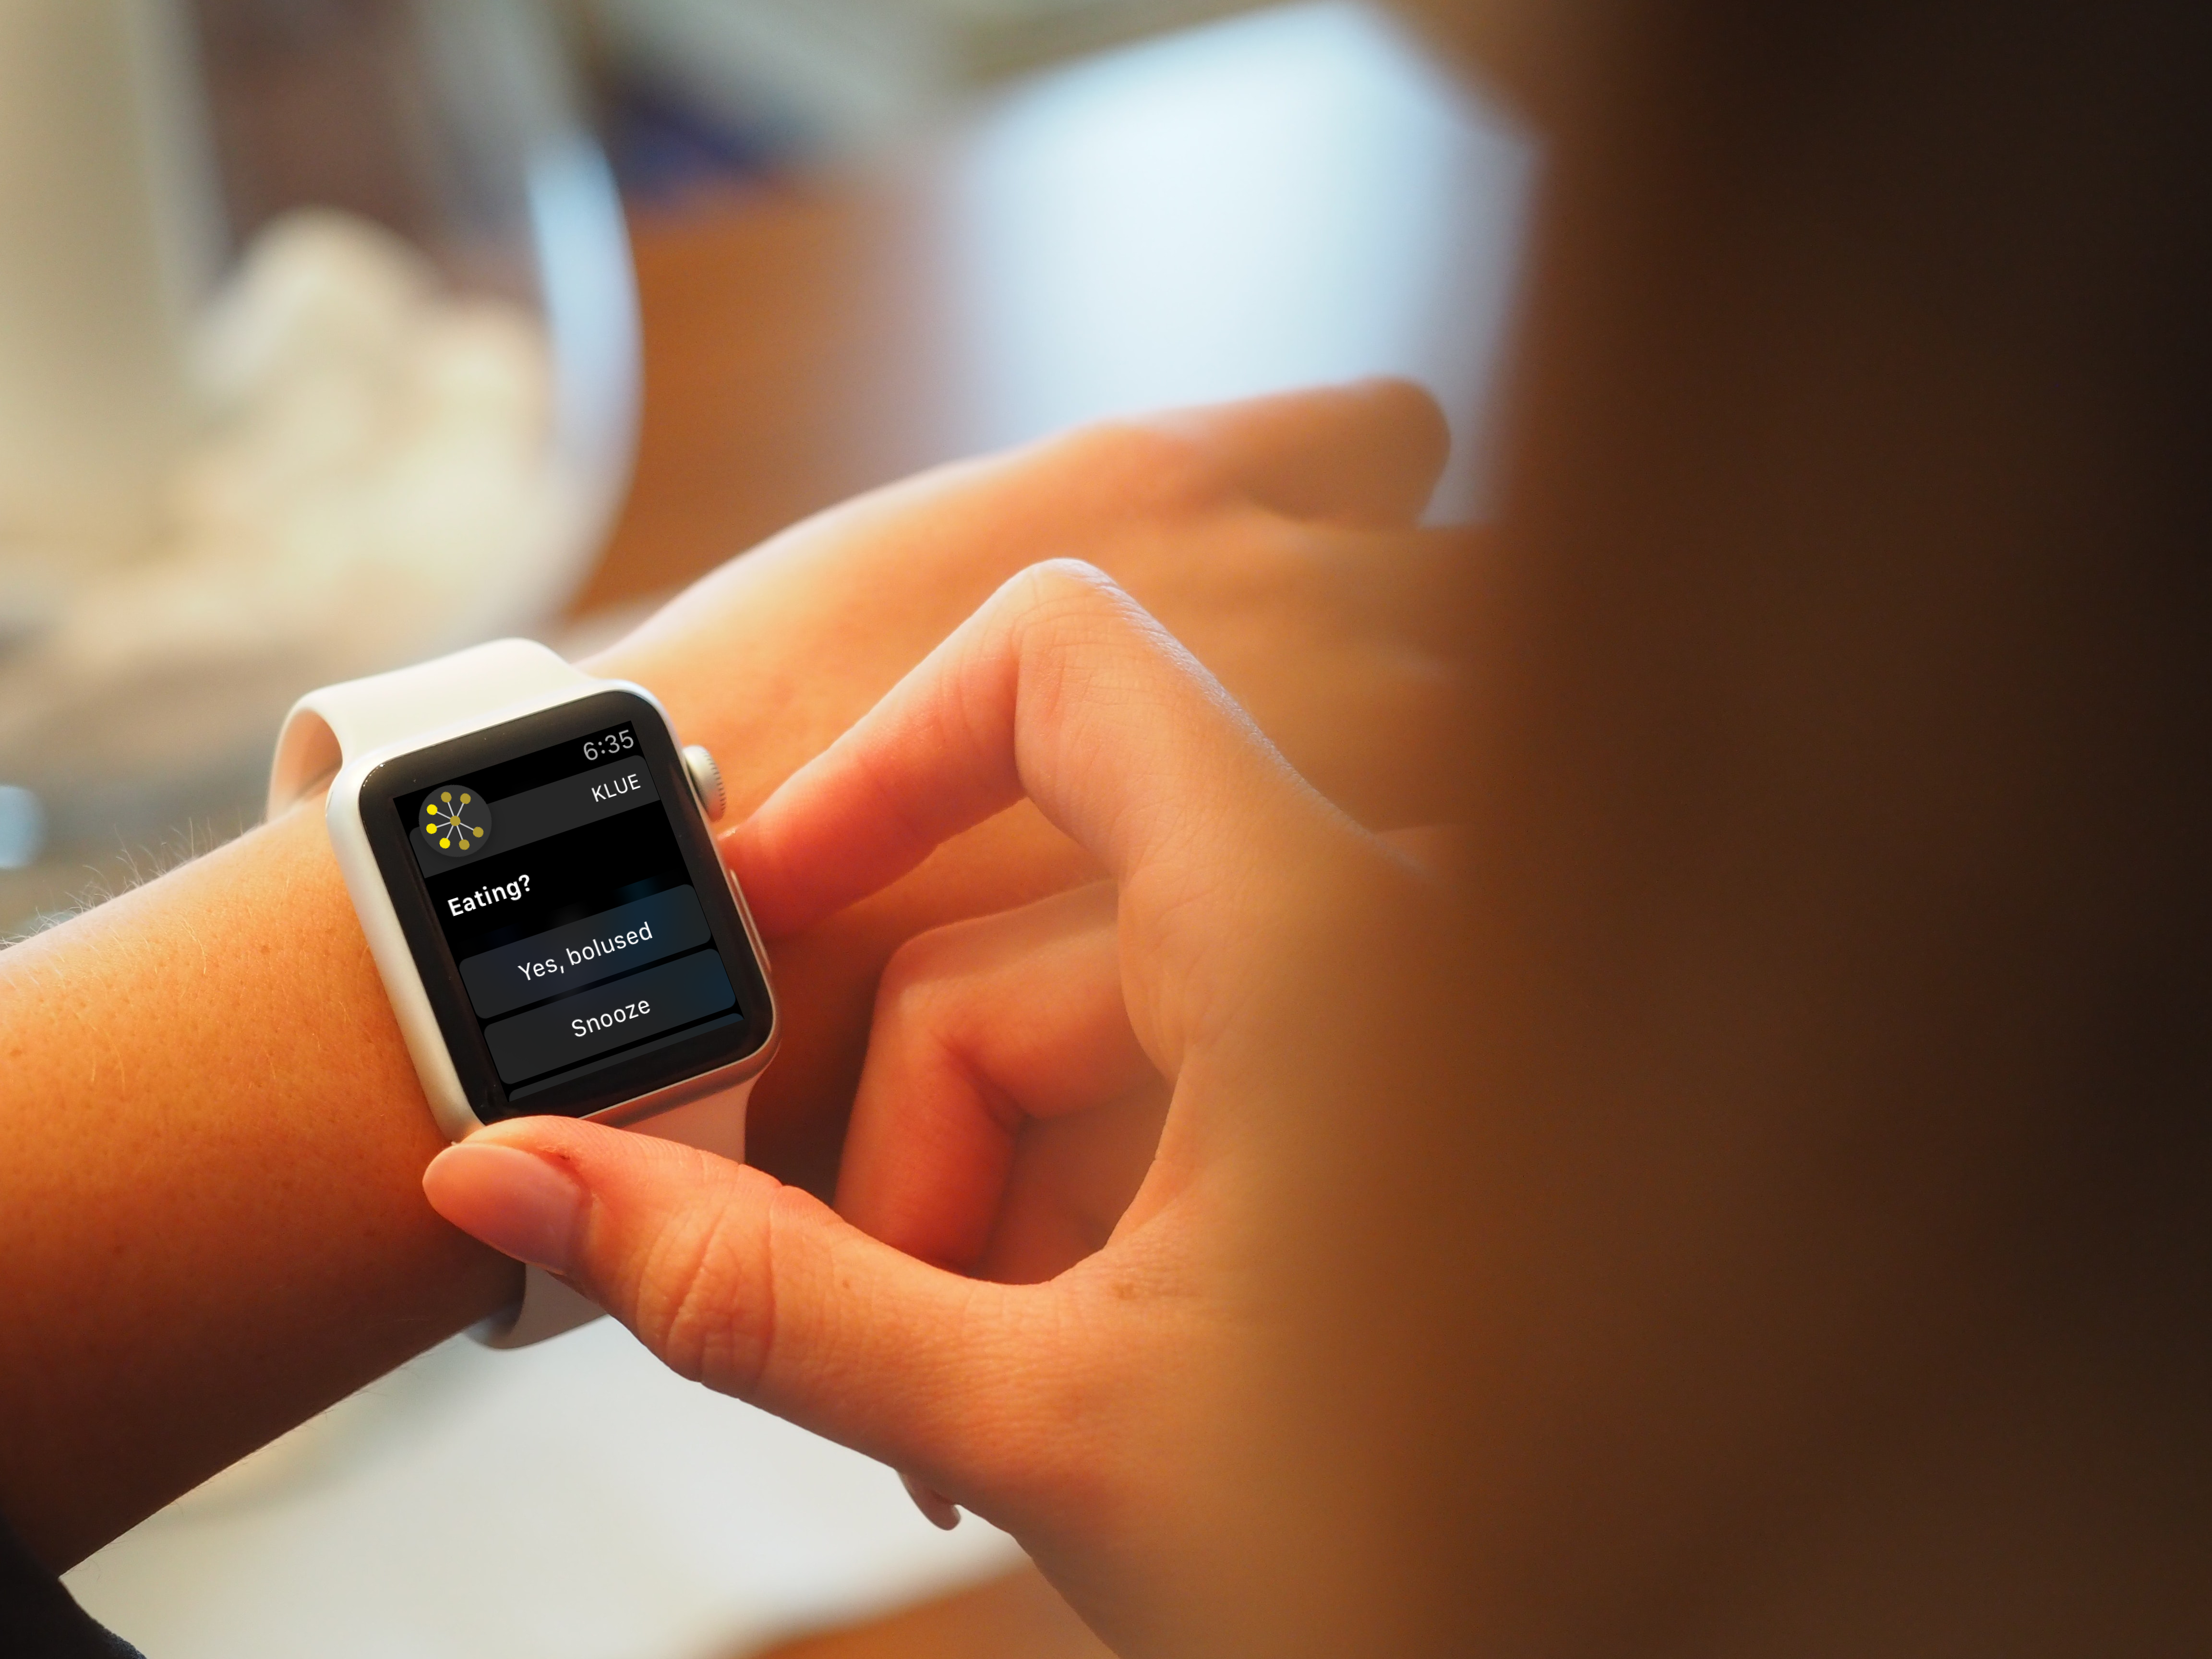 Smartwatch on wrist showing bolus reminder